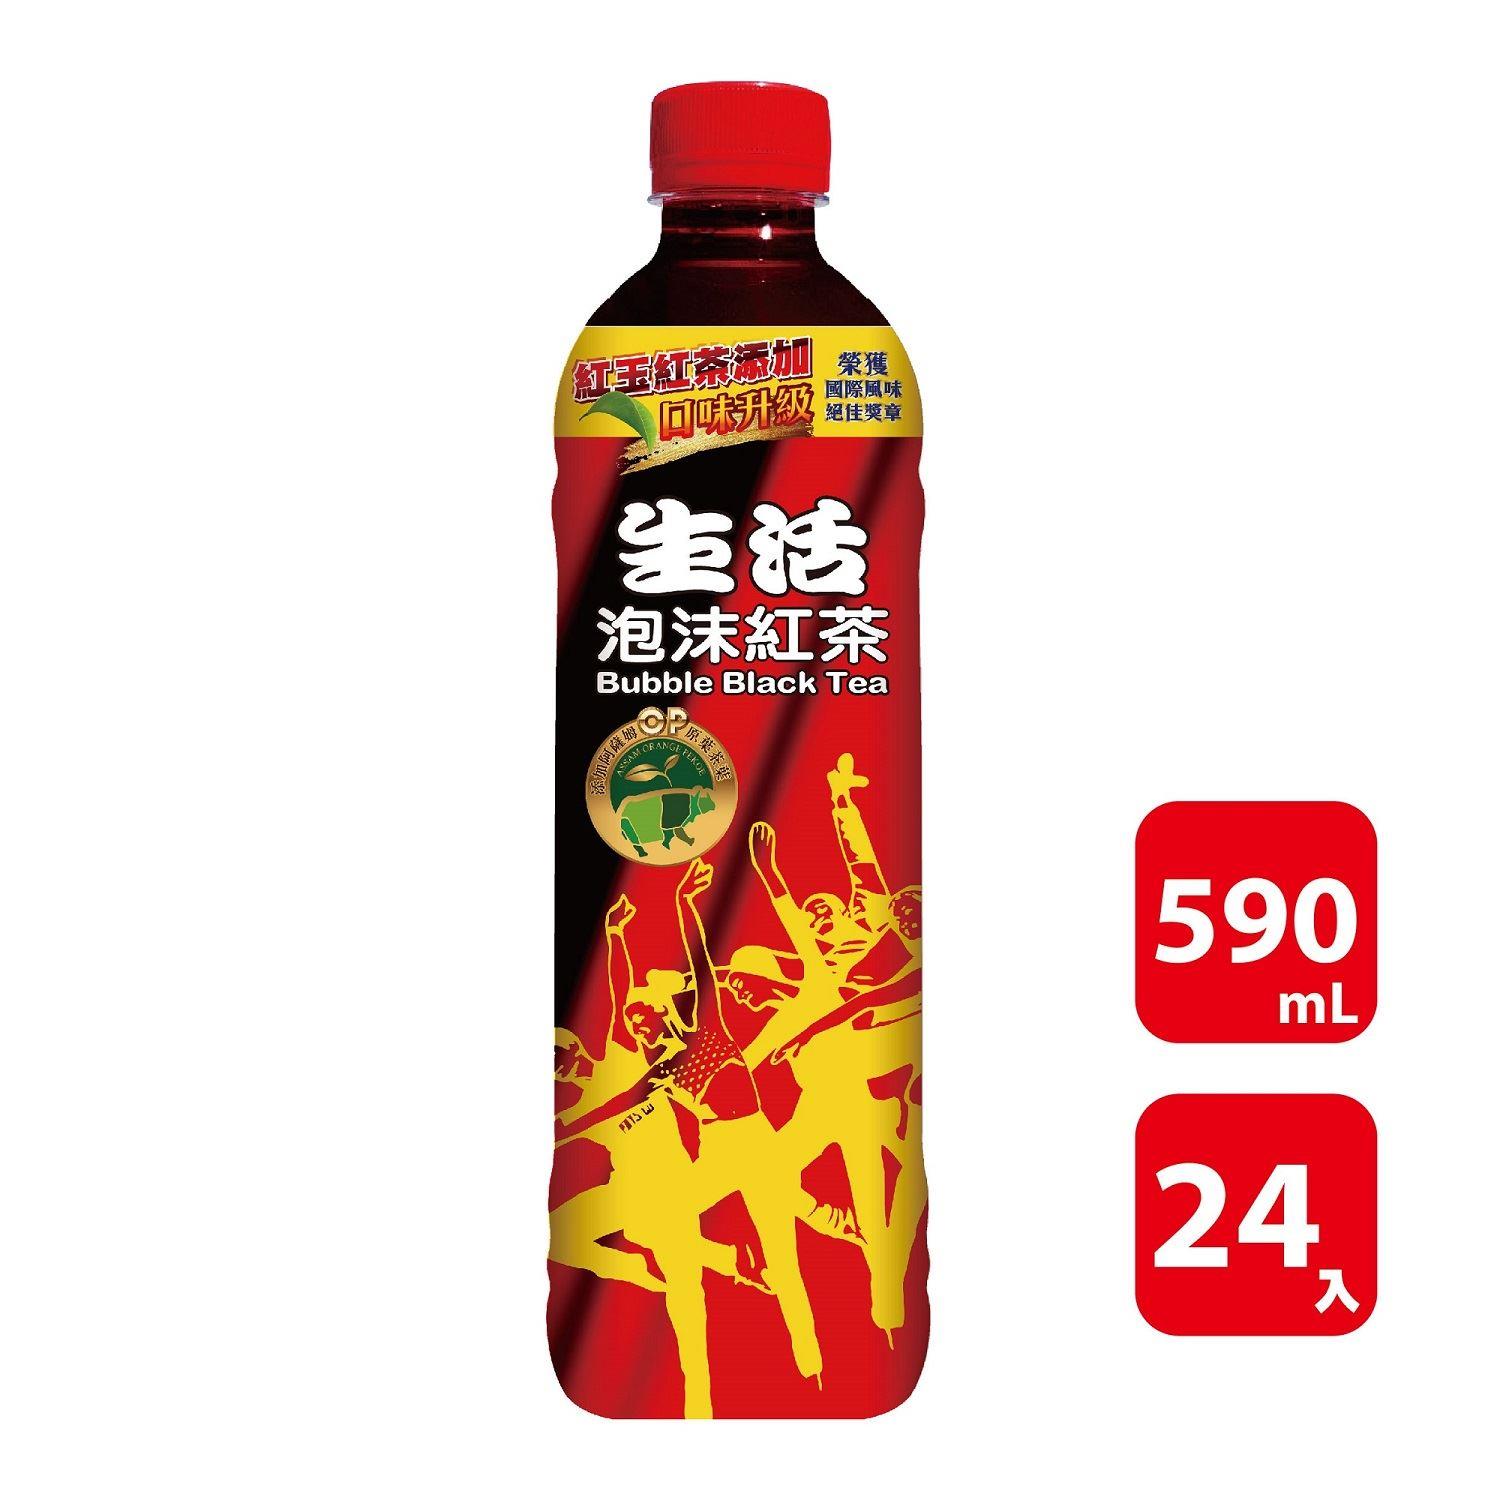 【生活】箱購生活泡沫紅茶590ml(590mlx24)